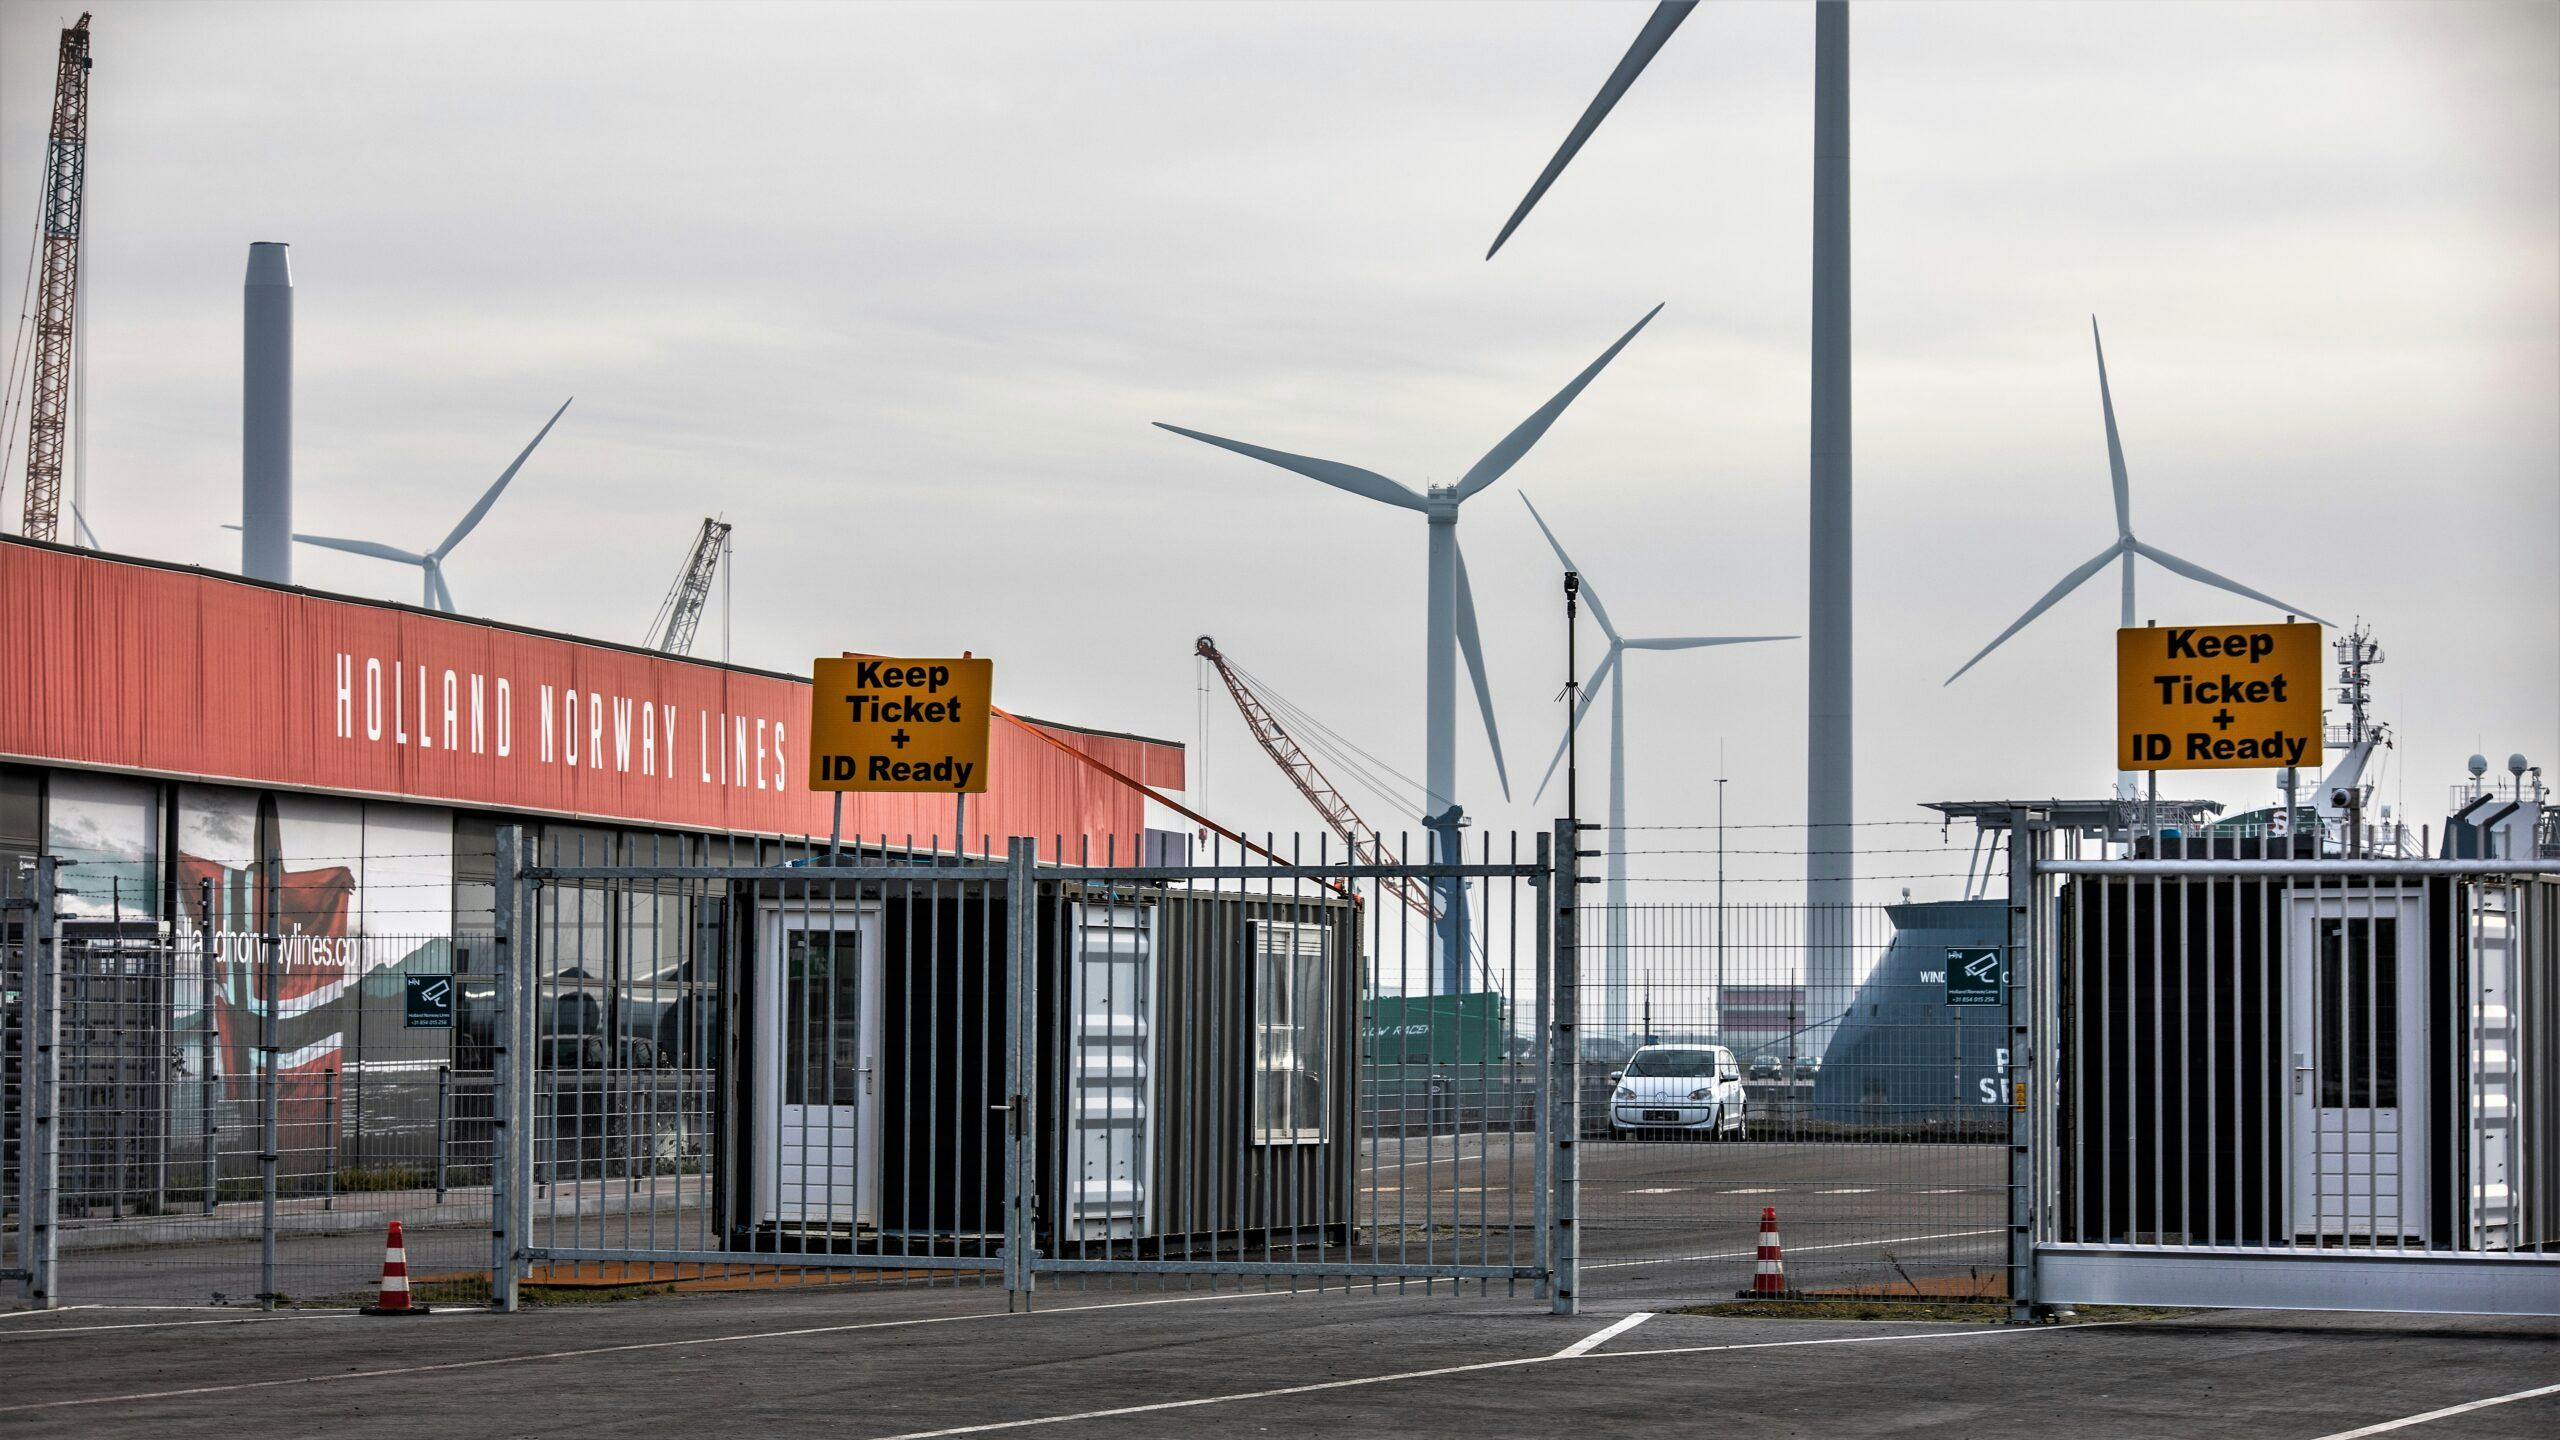 Eemshaven - de terminal van Holand Norway Lines. 

ANP / Hollandse Hoogte / De Vries Media